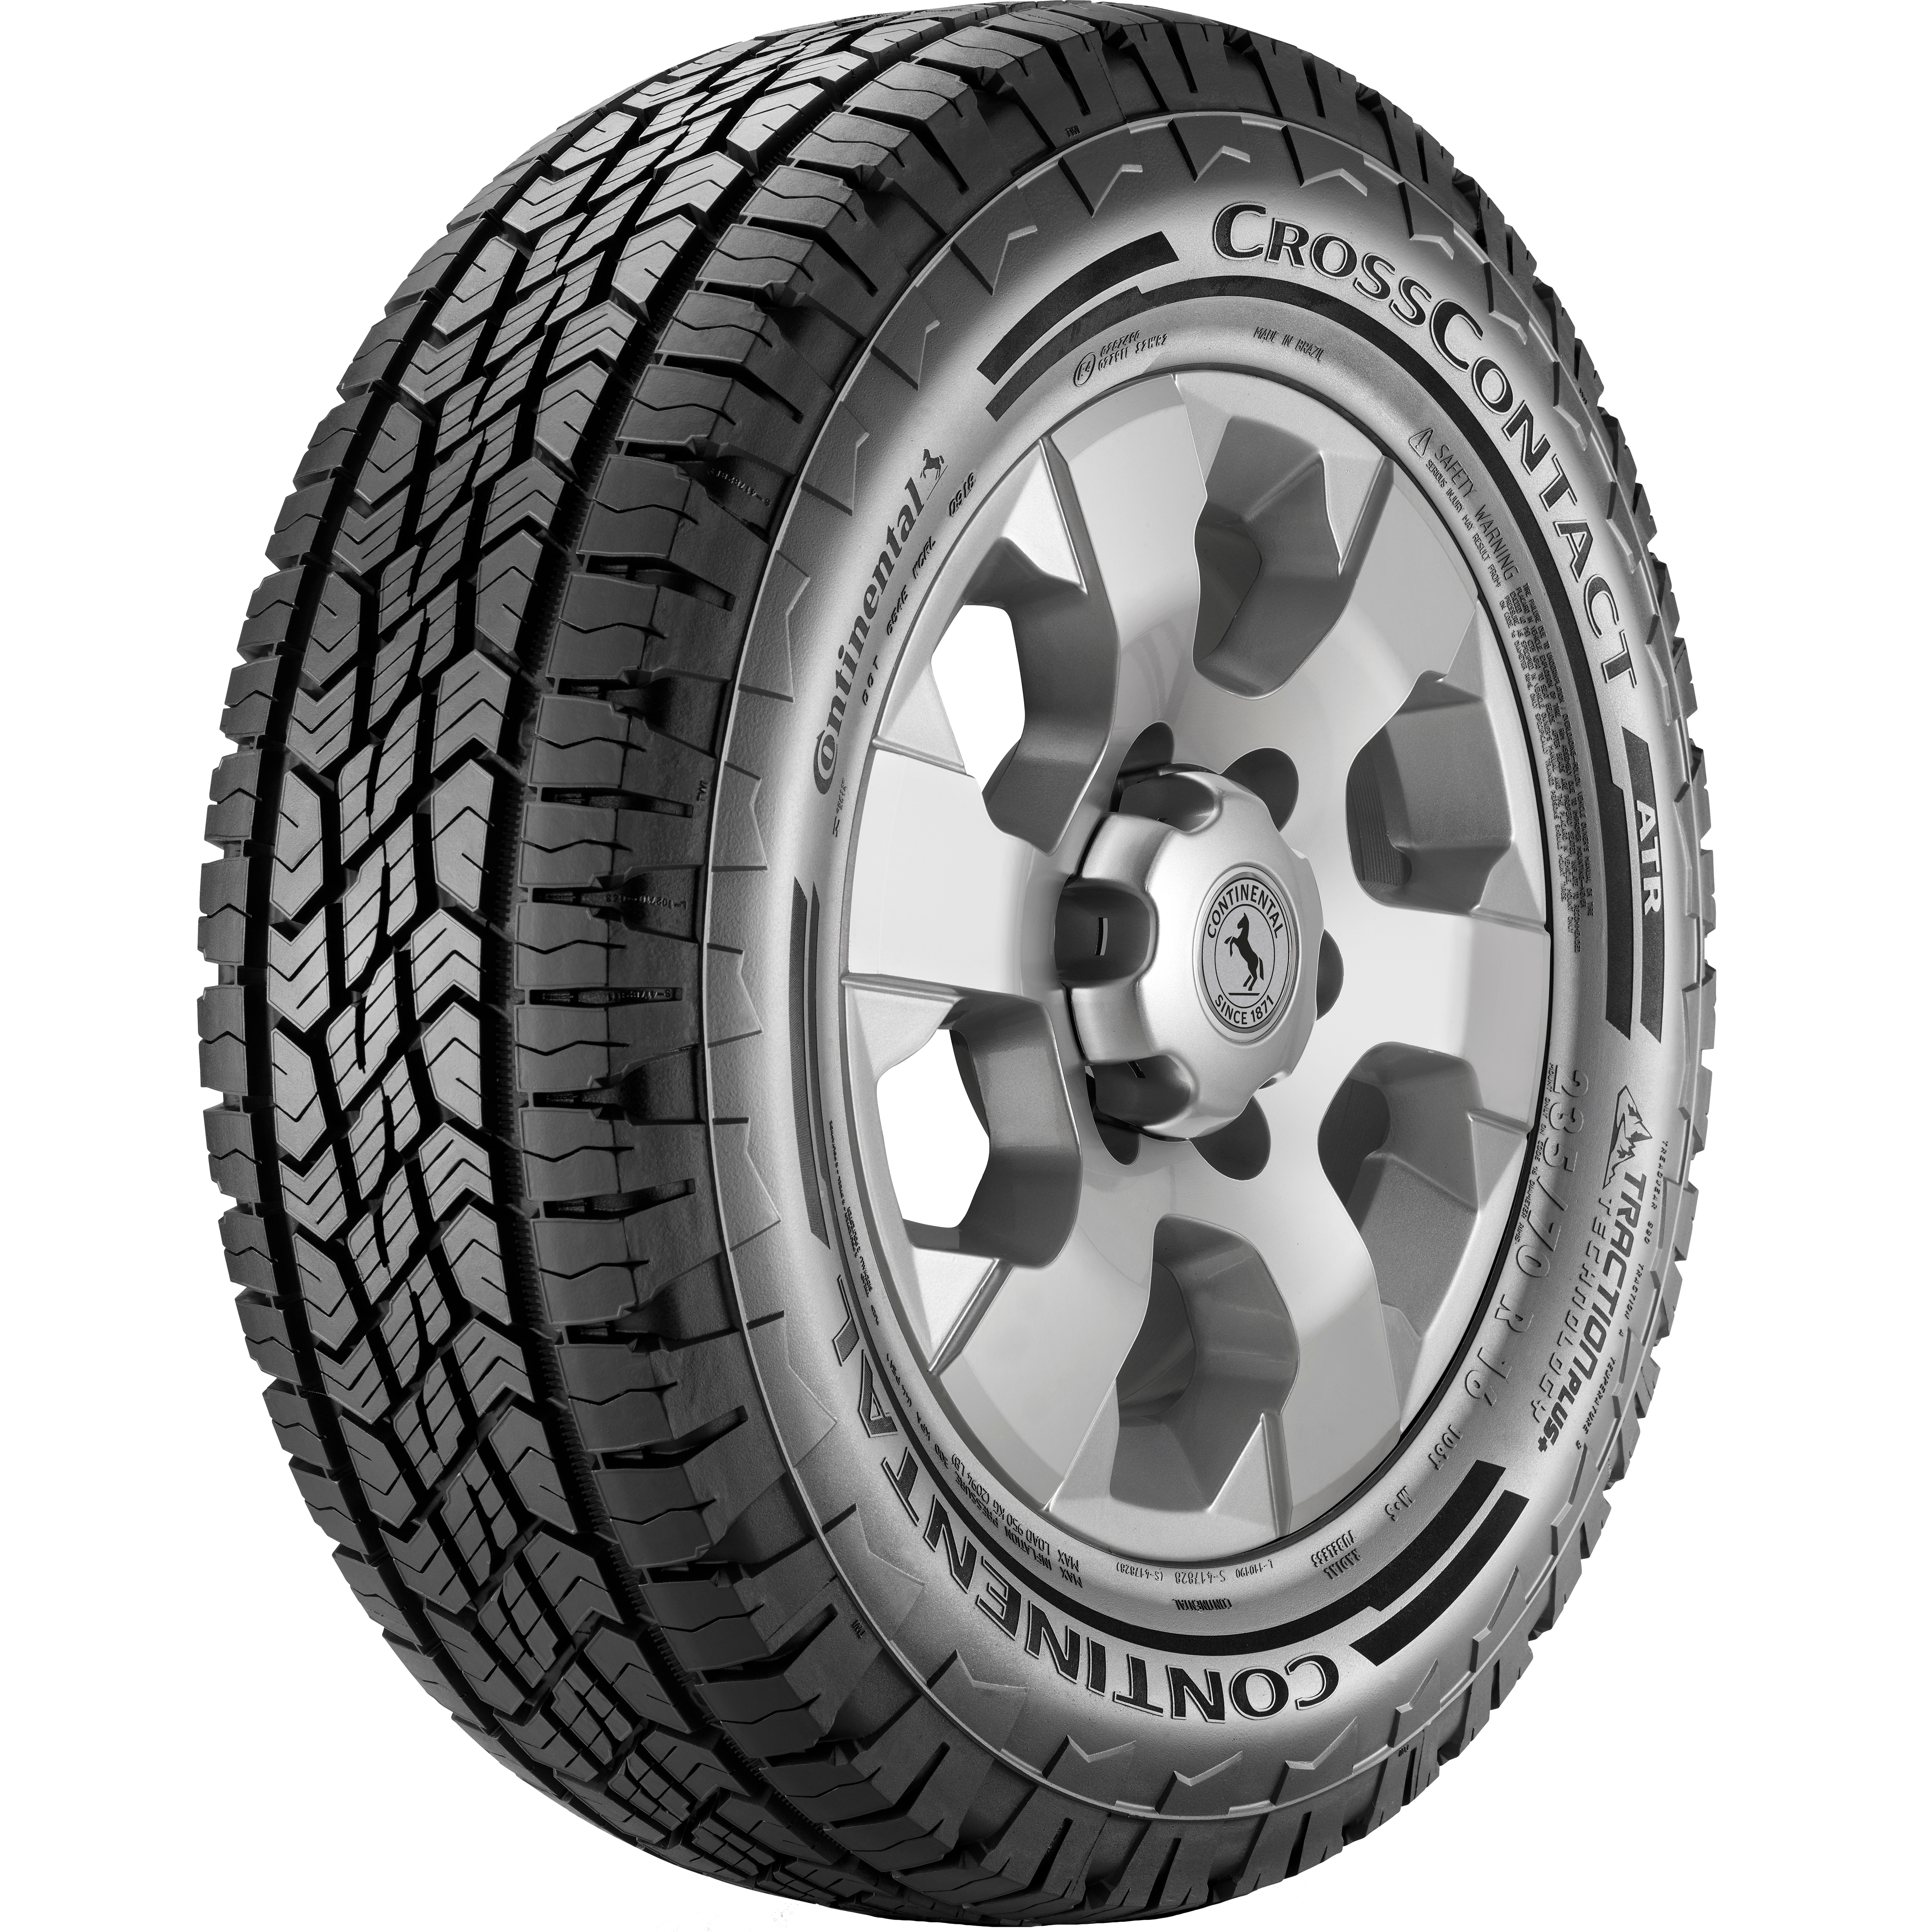 (foto do pneu para Ford Ranger - ContiCrossContact ATR)